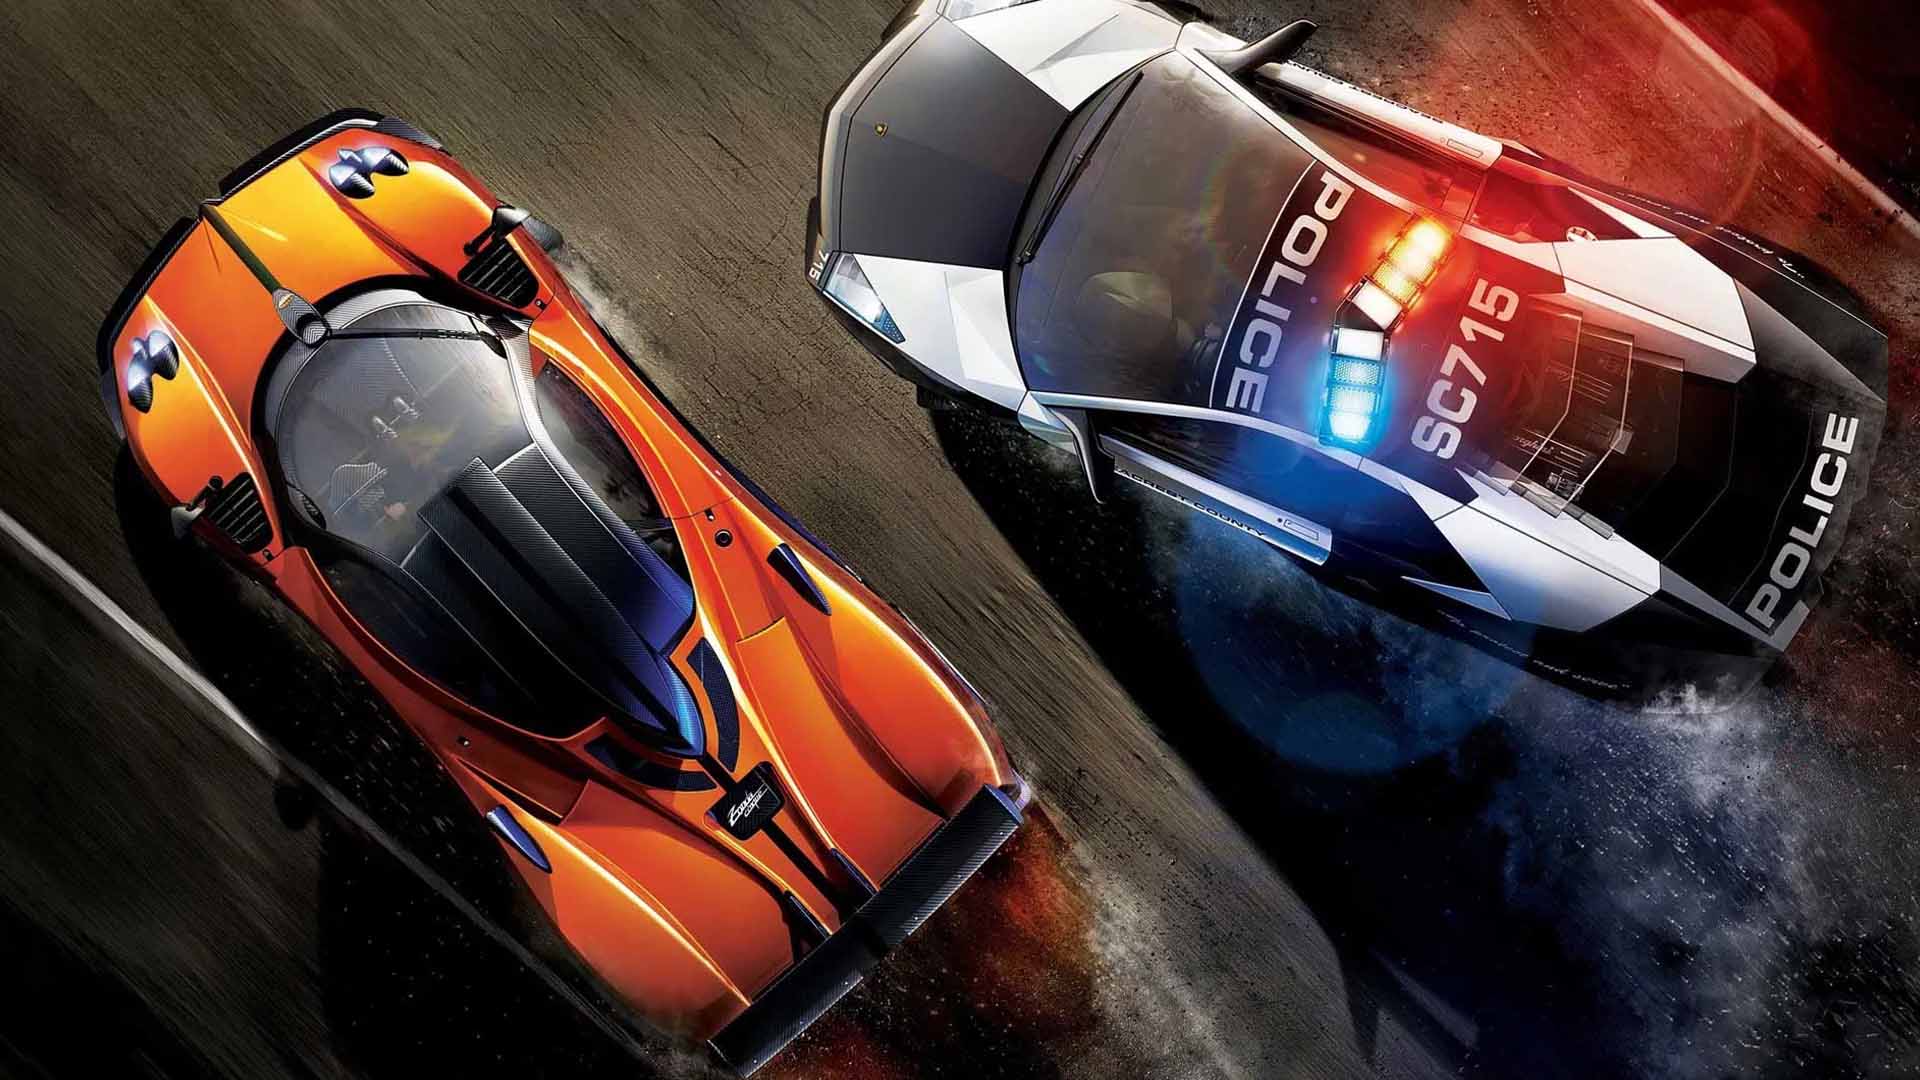 نسخه جدید بازی Need for Speed به زودی معرفی خواهد شد